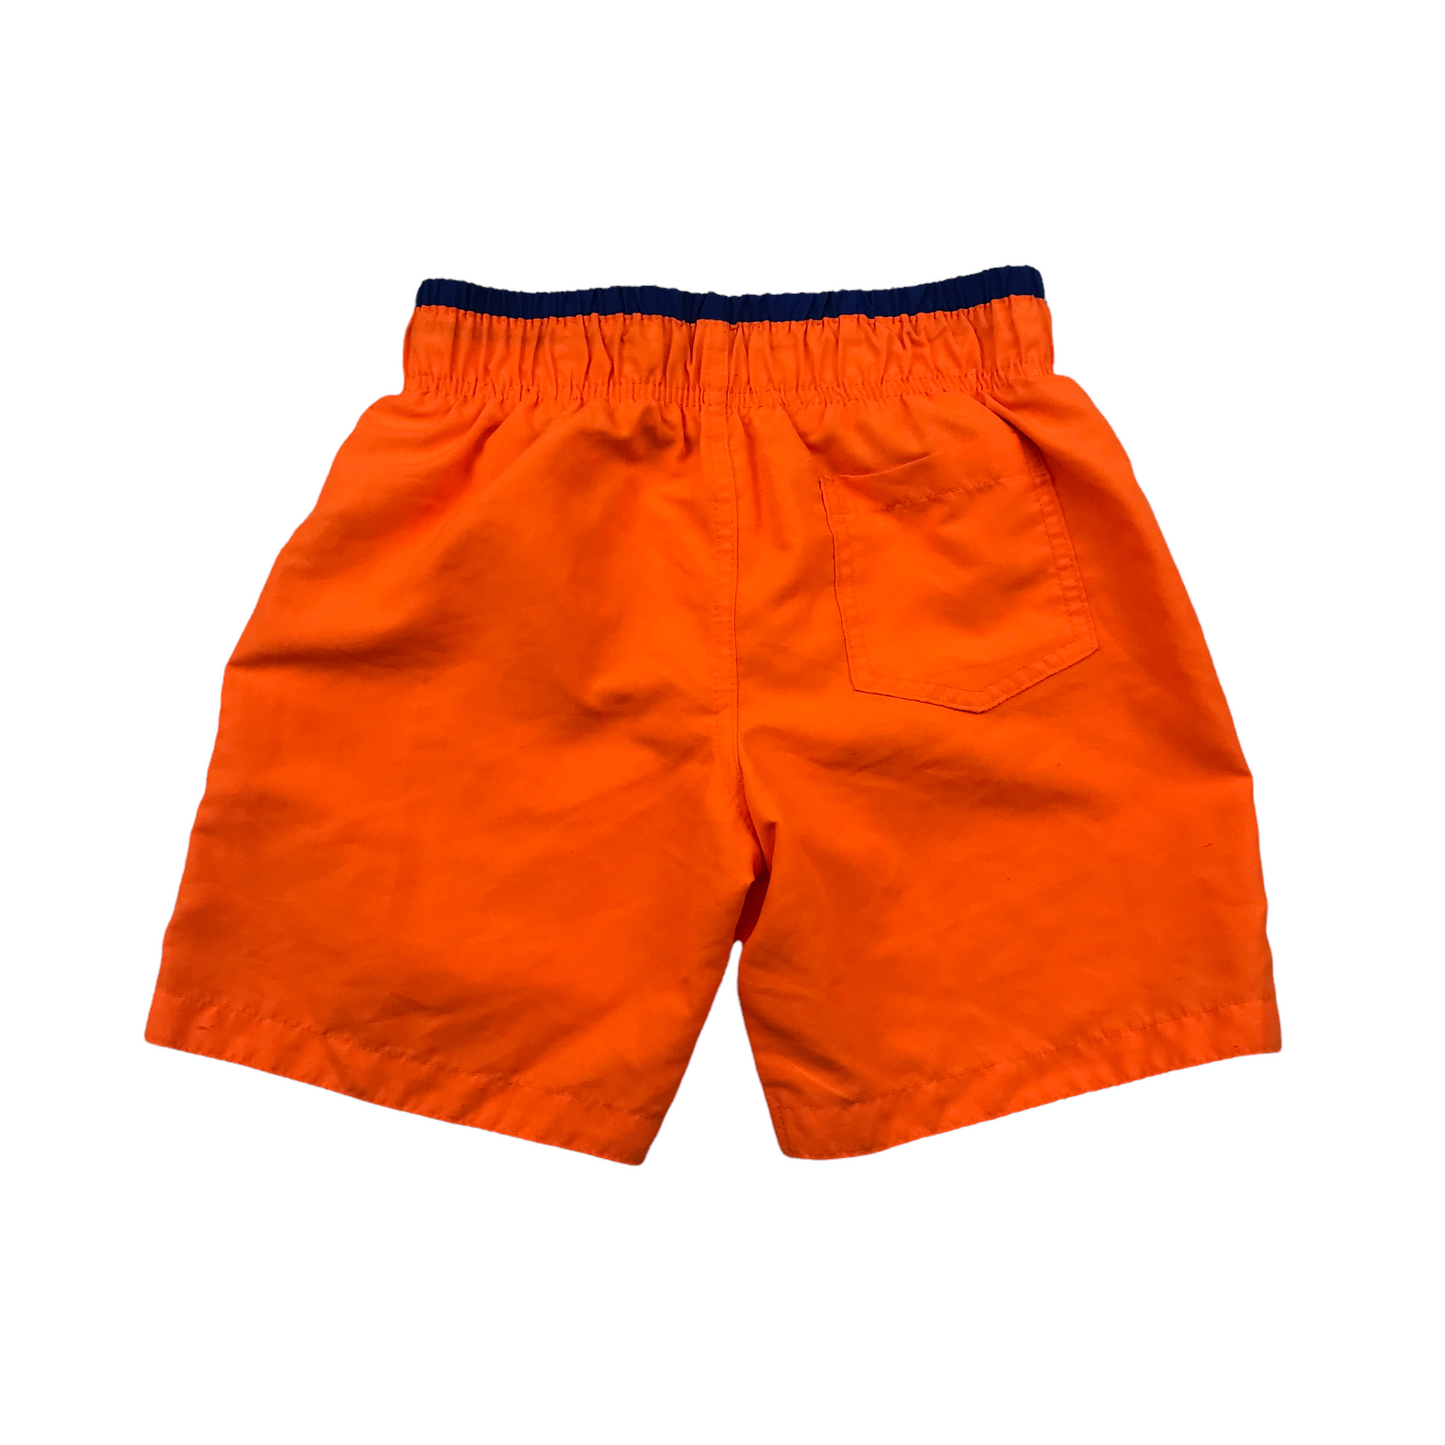 Primark Bright Orange Swim Trunks Age 7